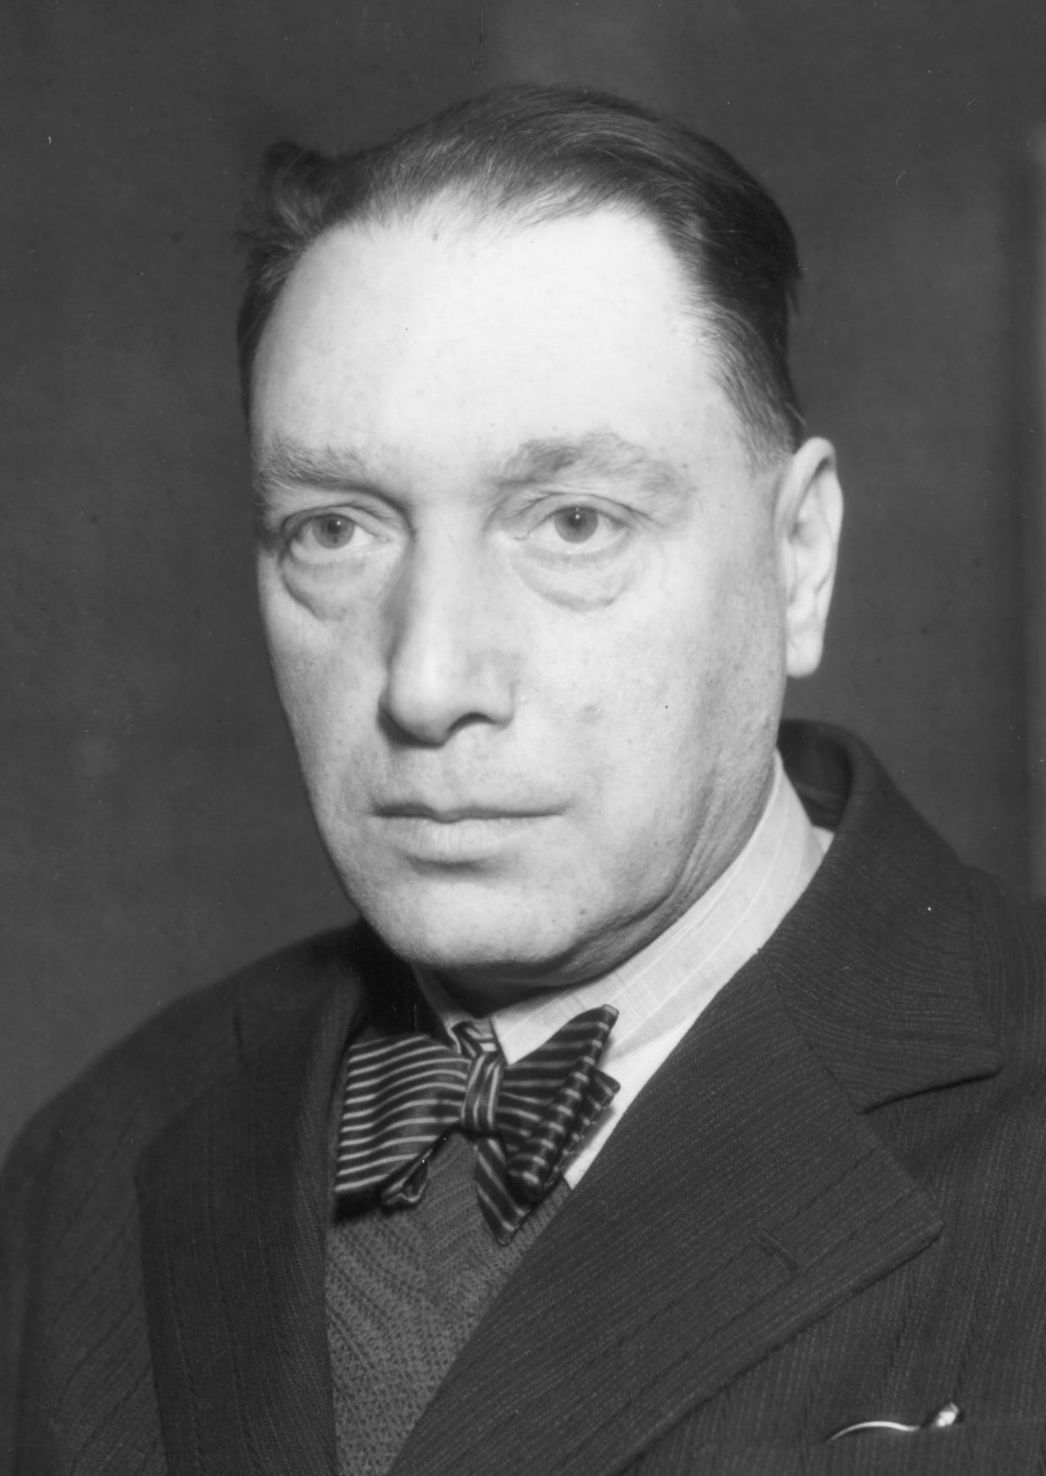 Portrait photograph of Emil Filla